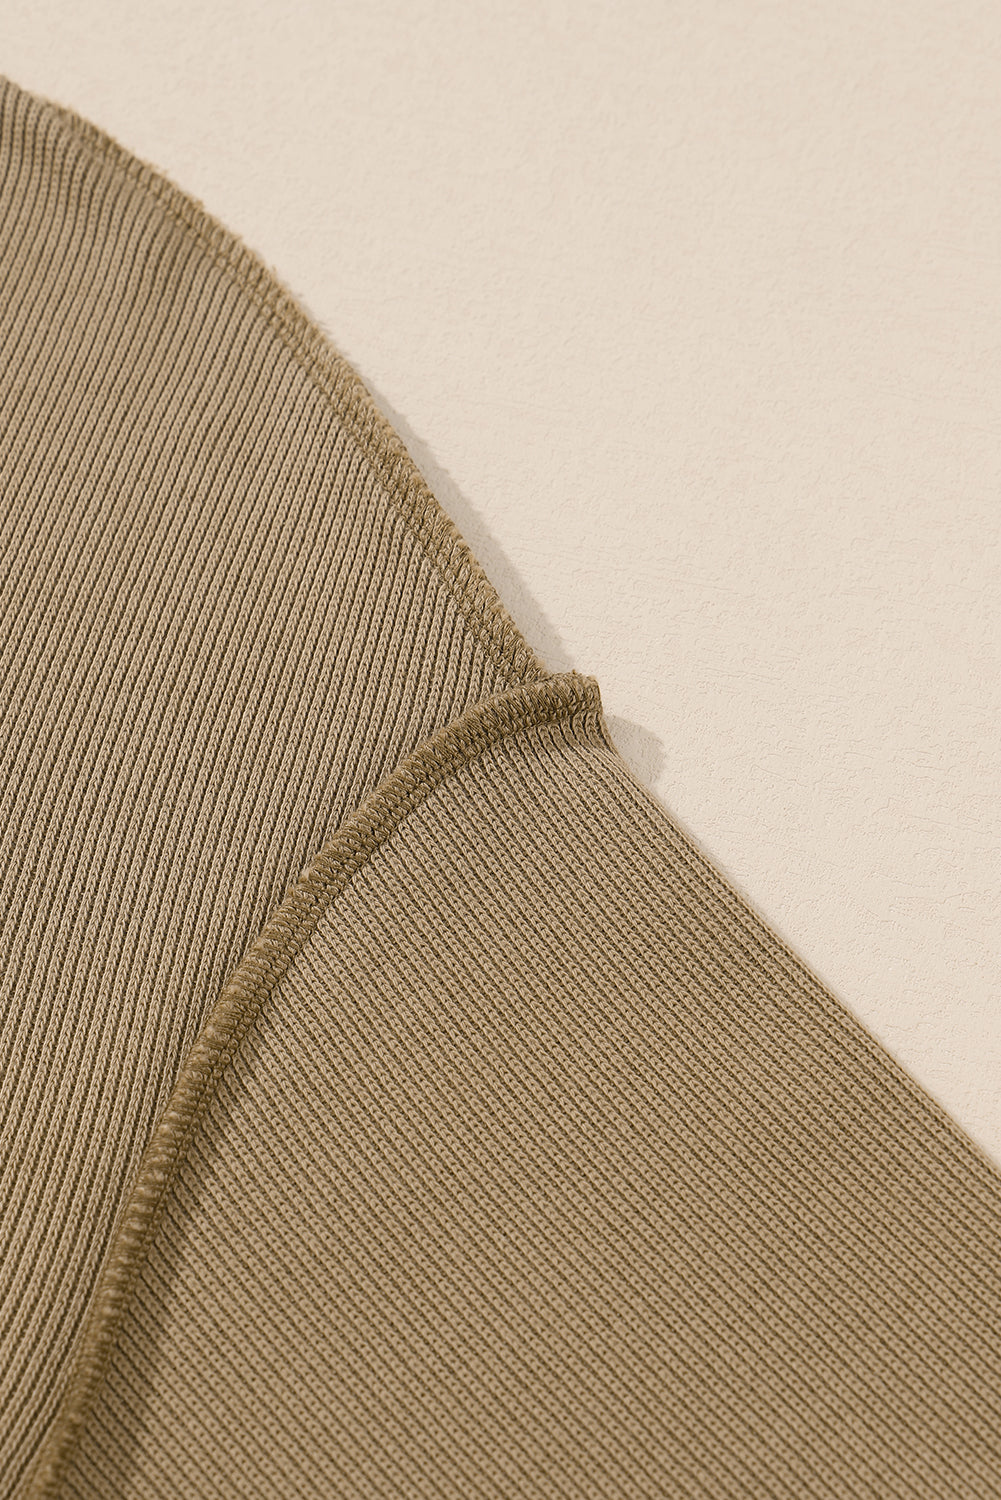 Khakifarbenes, langärmliges Top-Shorts-Set mit sichtbaren Nähten und Struktur